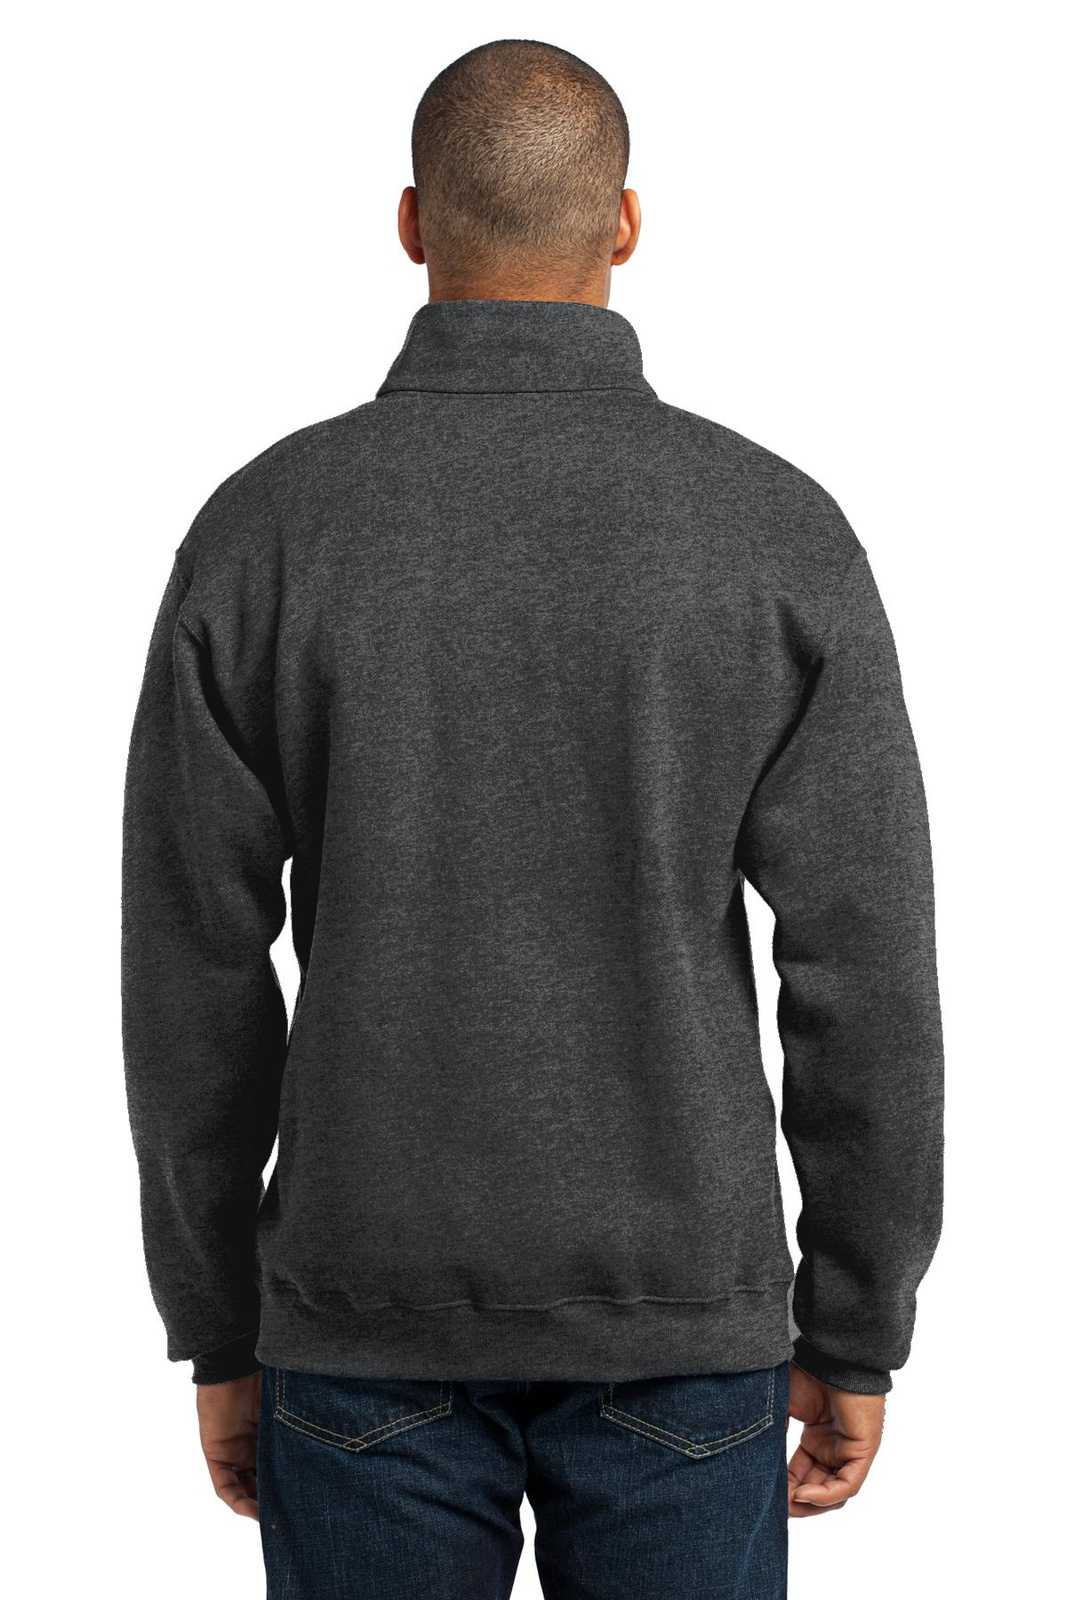 Jerzees 995M Nublend 1/4-Zip Cadet Collar Sweatshirt - Black Heather - HIT a Double